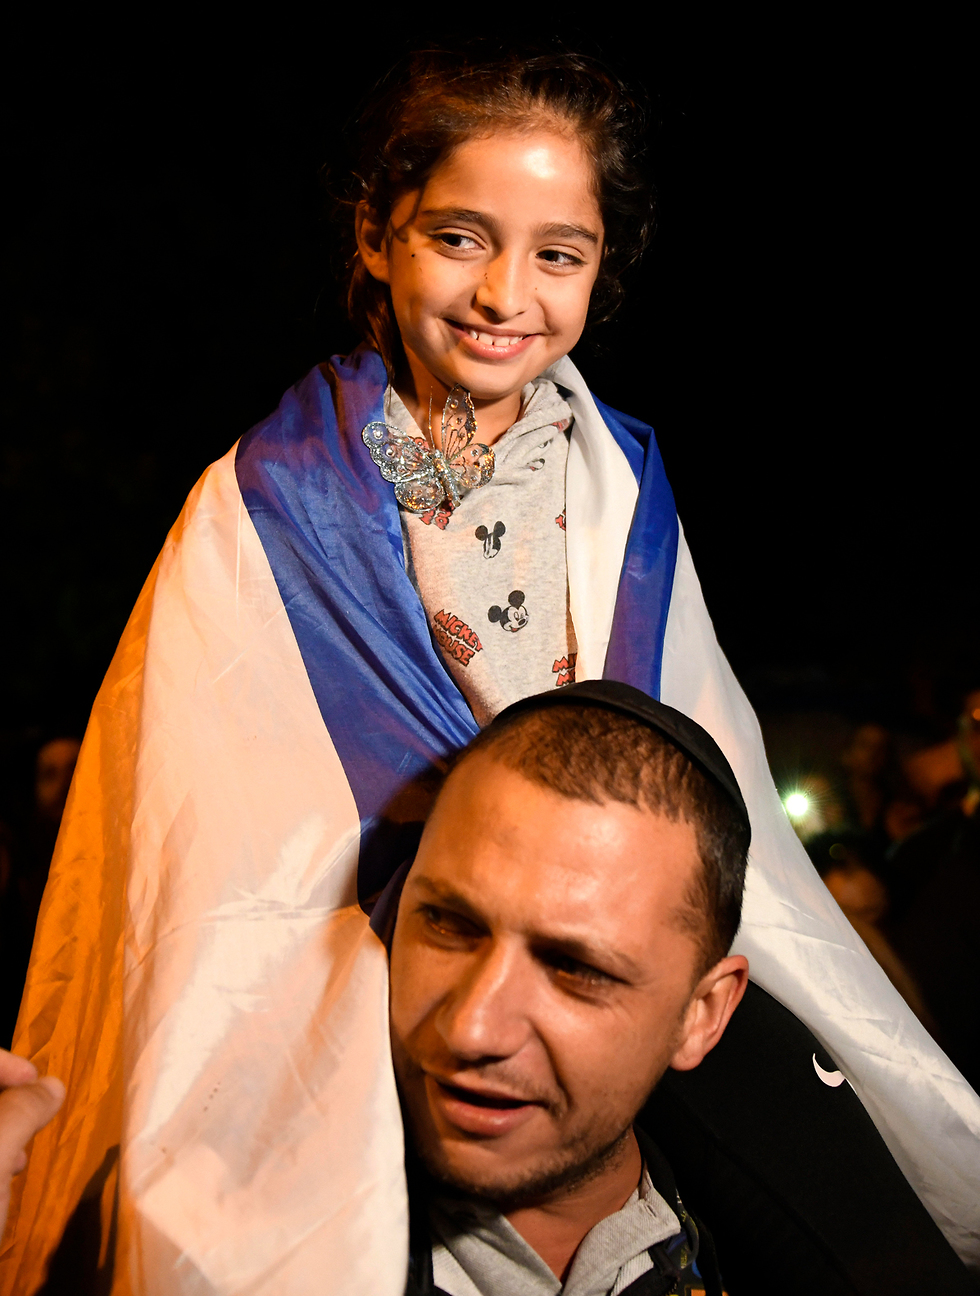 הילדה שנפצעה בבית הכנסת בפאווי, נויה דהן (צילום : AP)